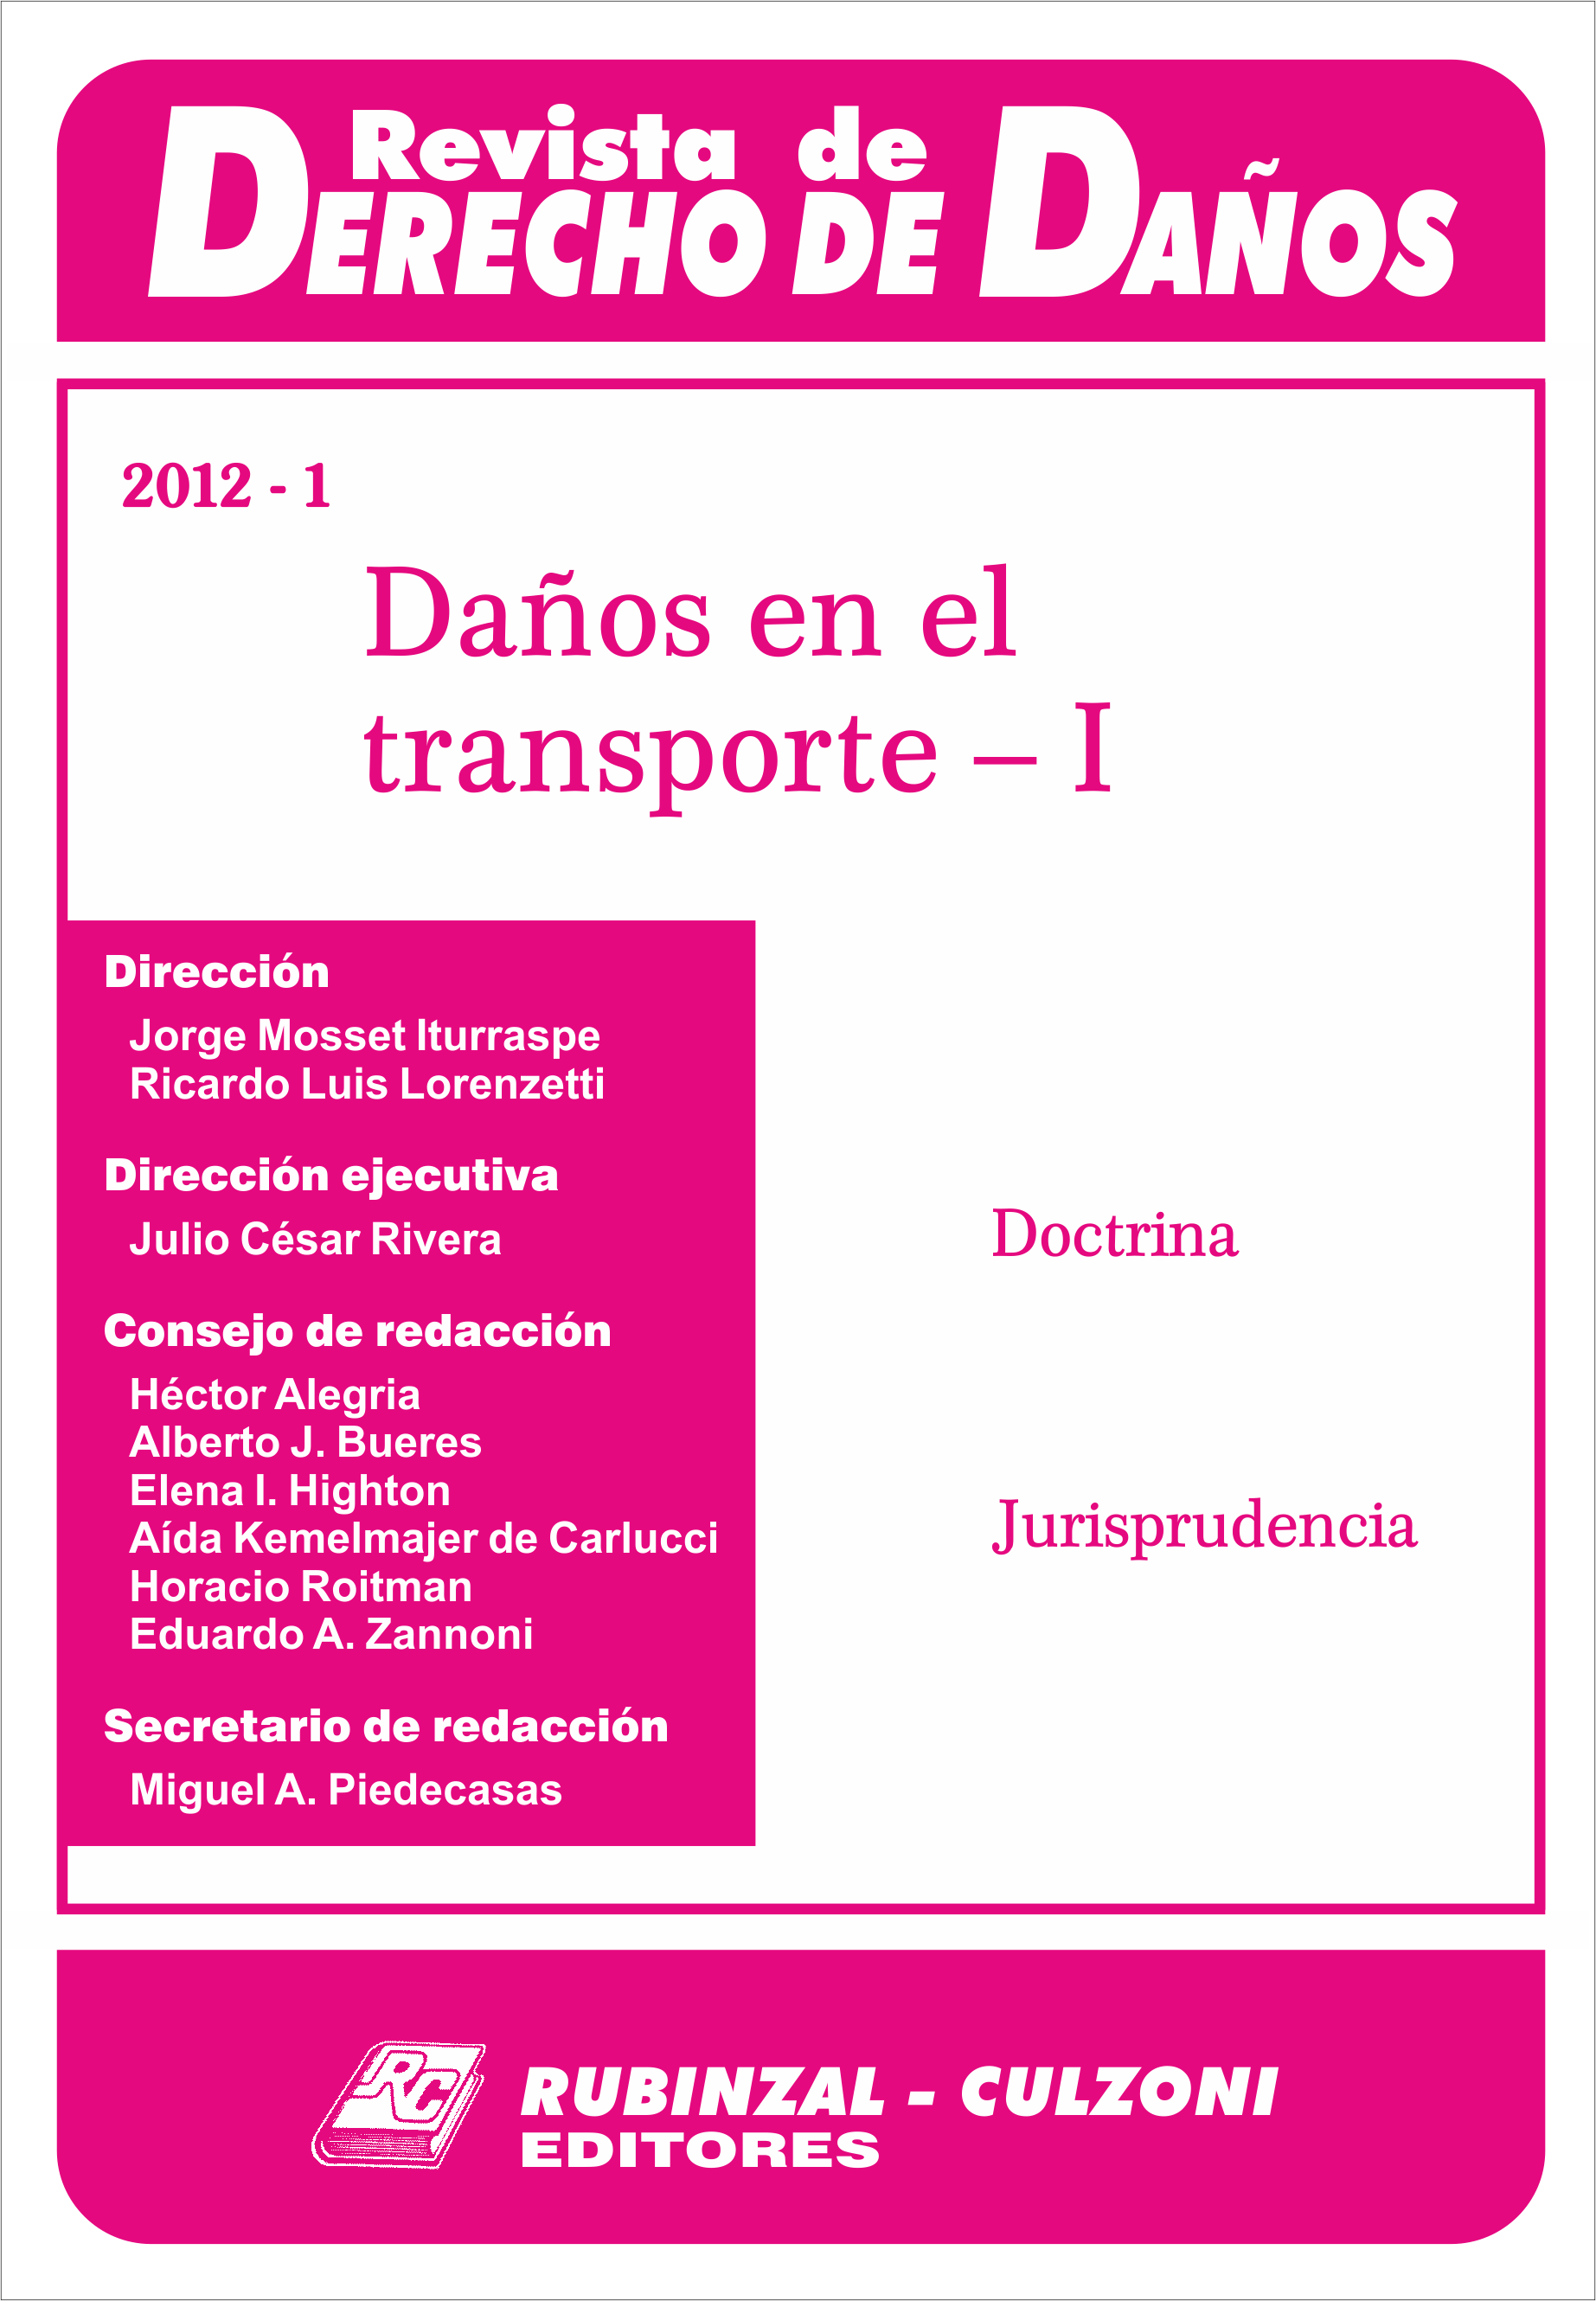 Revista de Derecho de Daños - Daños en el transporte - I.